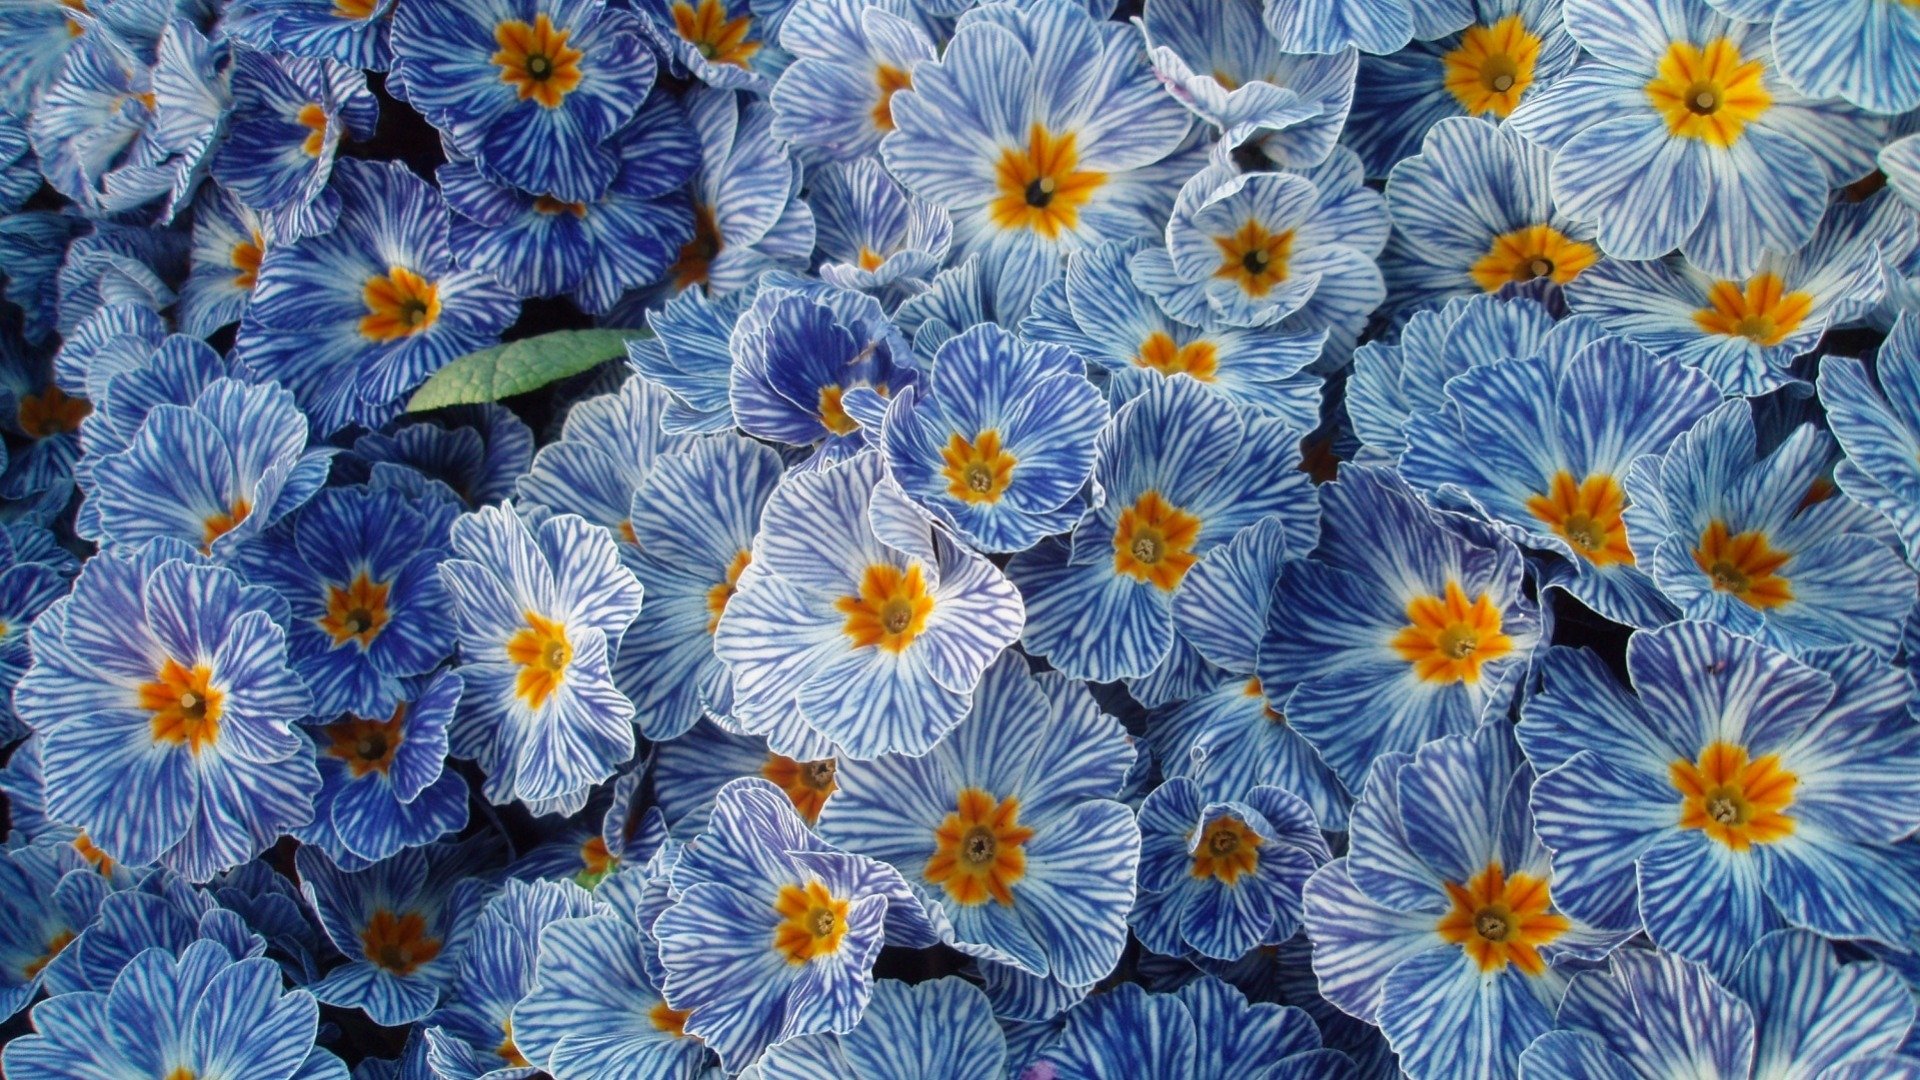 Spring Flowers Wallpapers Hd 60 Pixelstalk Net - vrogue.co